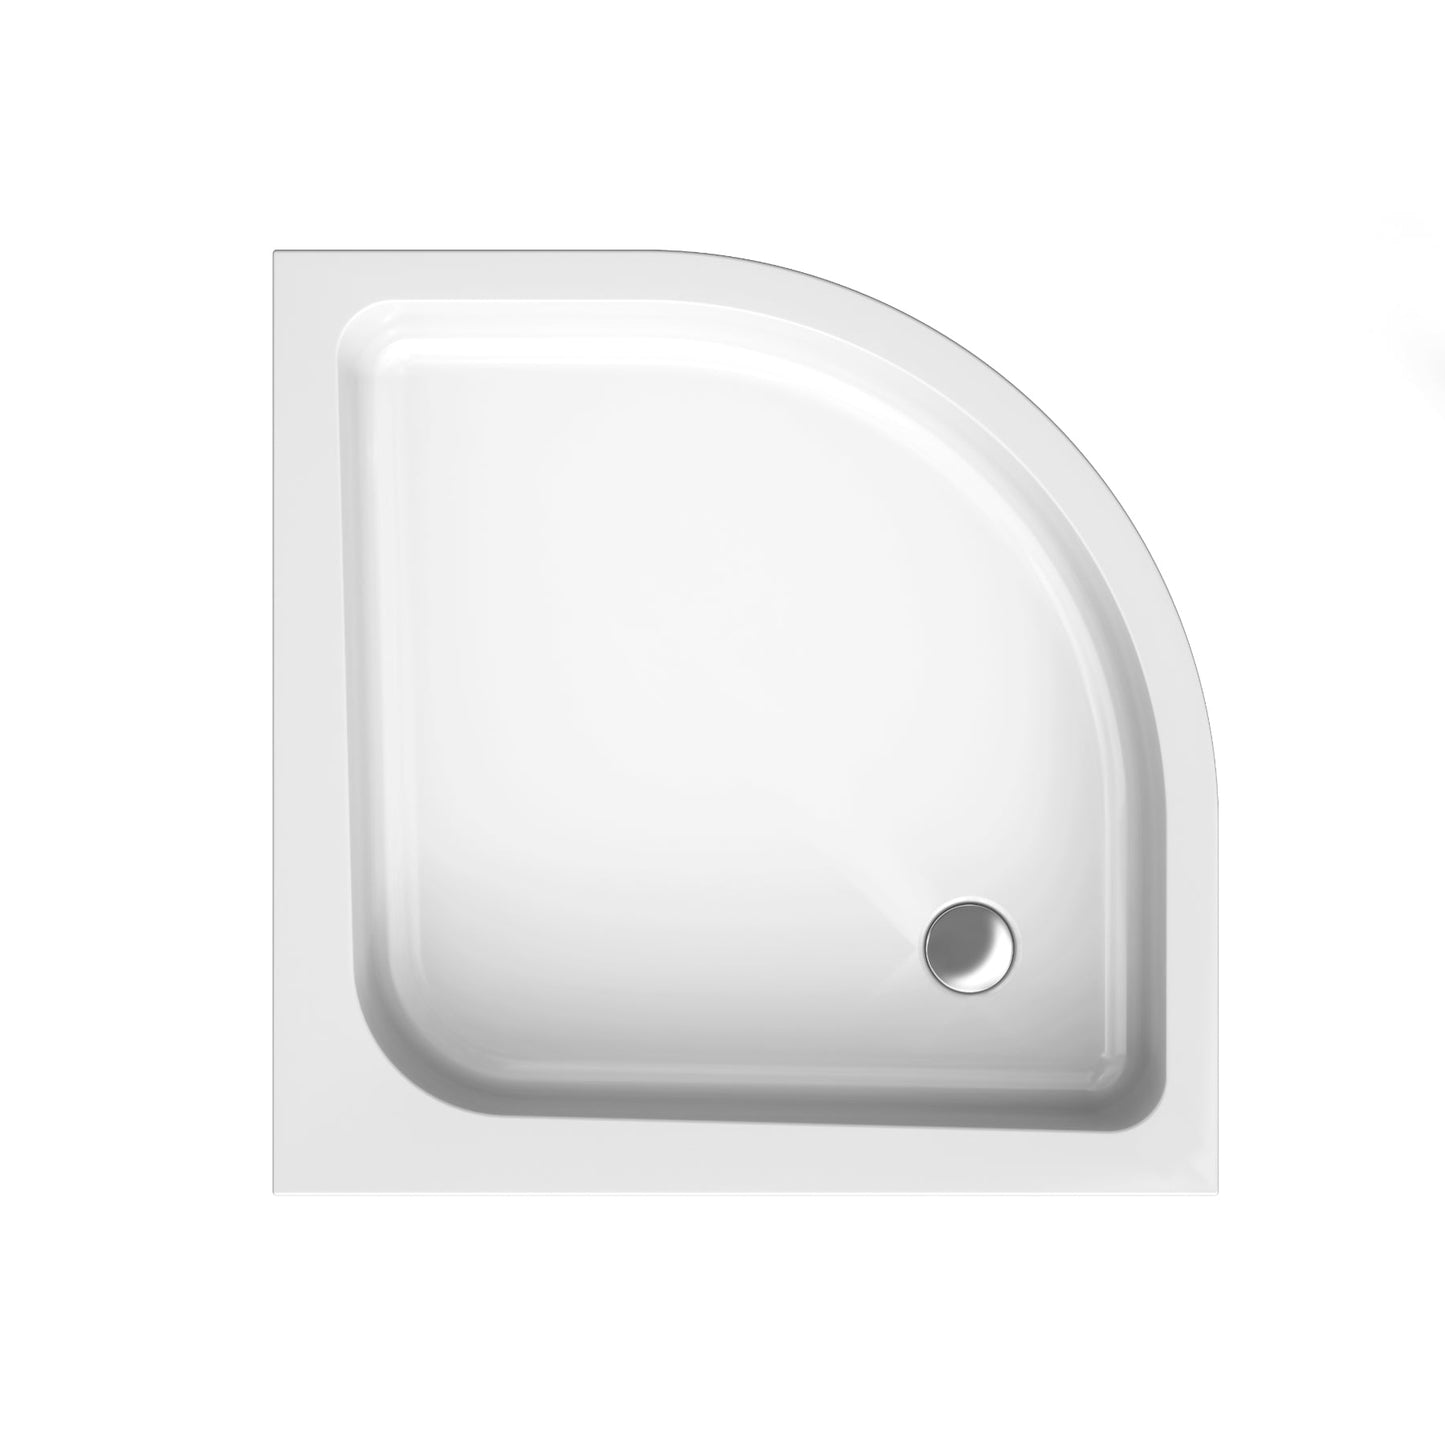 Acrylic semicircular shower base PAKO